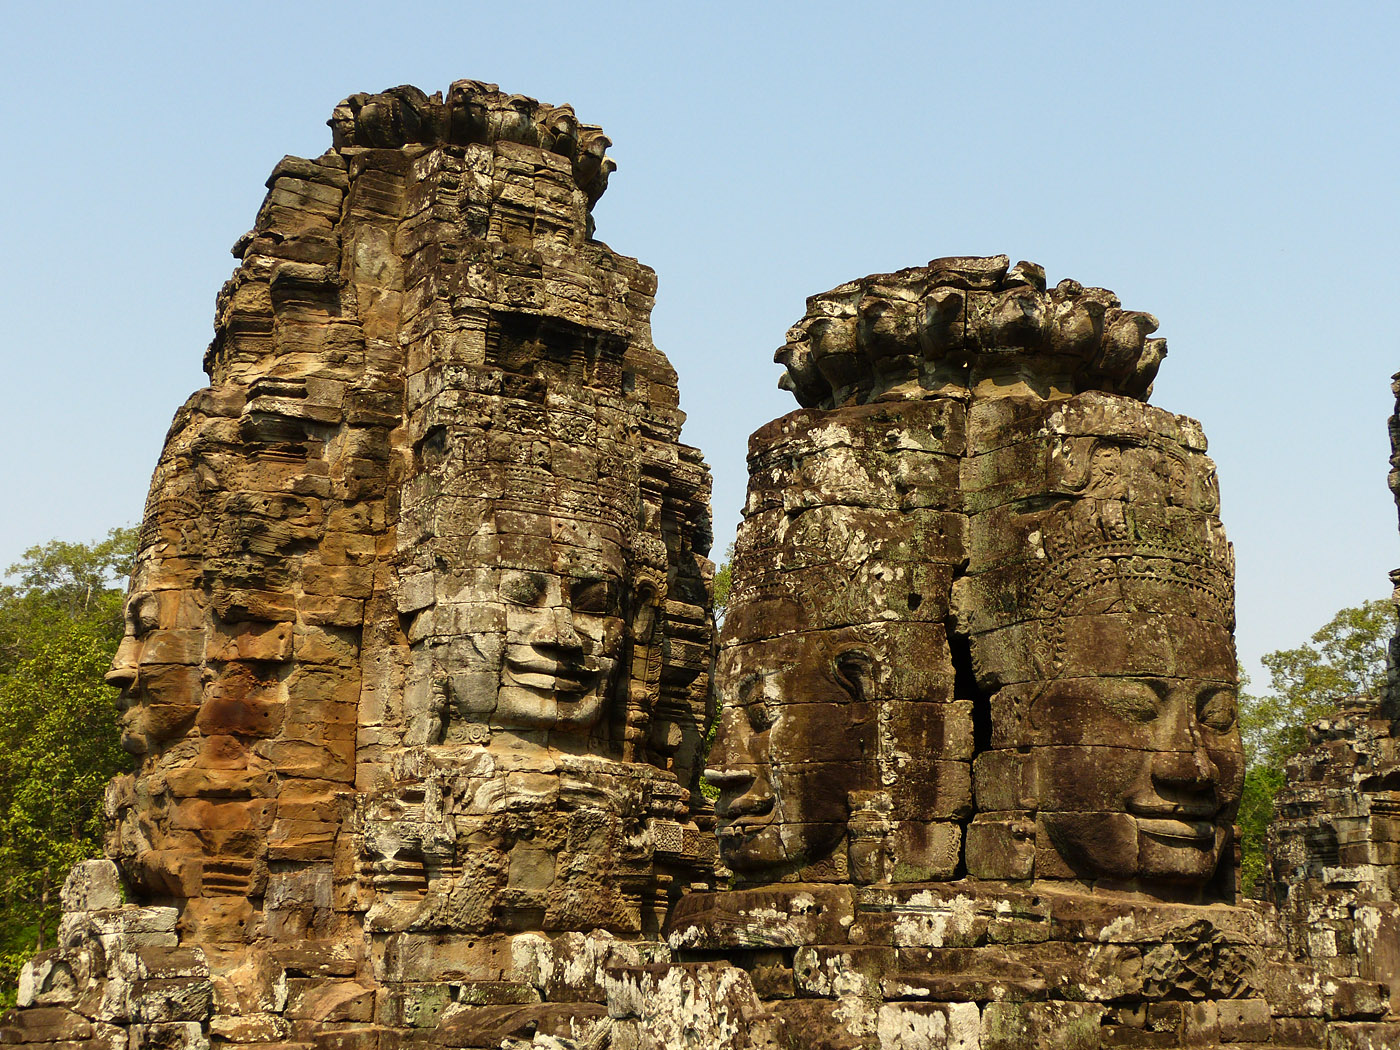 The Bayon, Angkor Thom, Cambodia